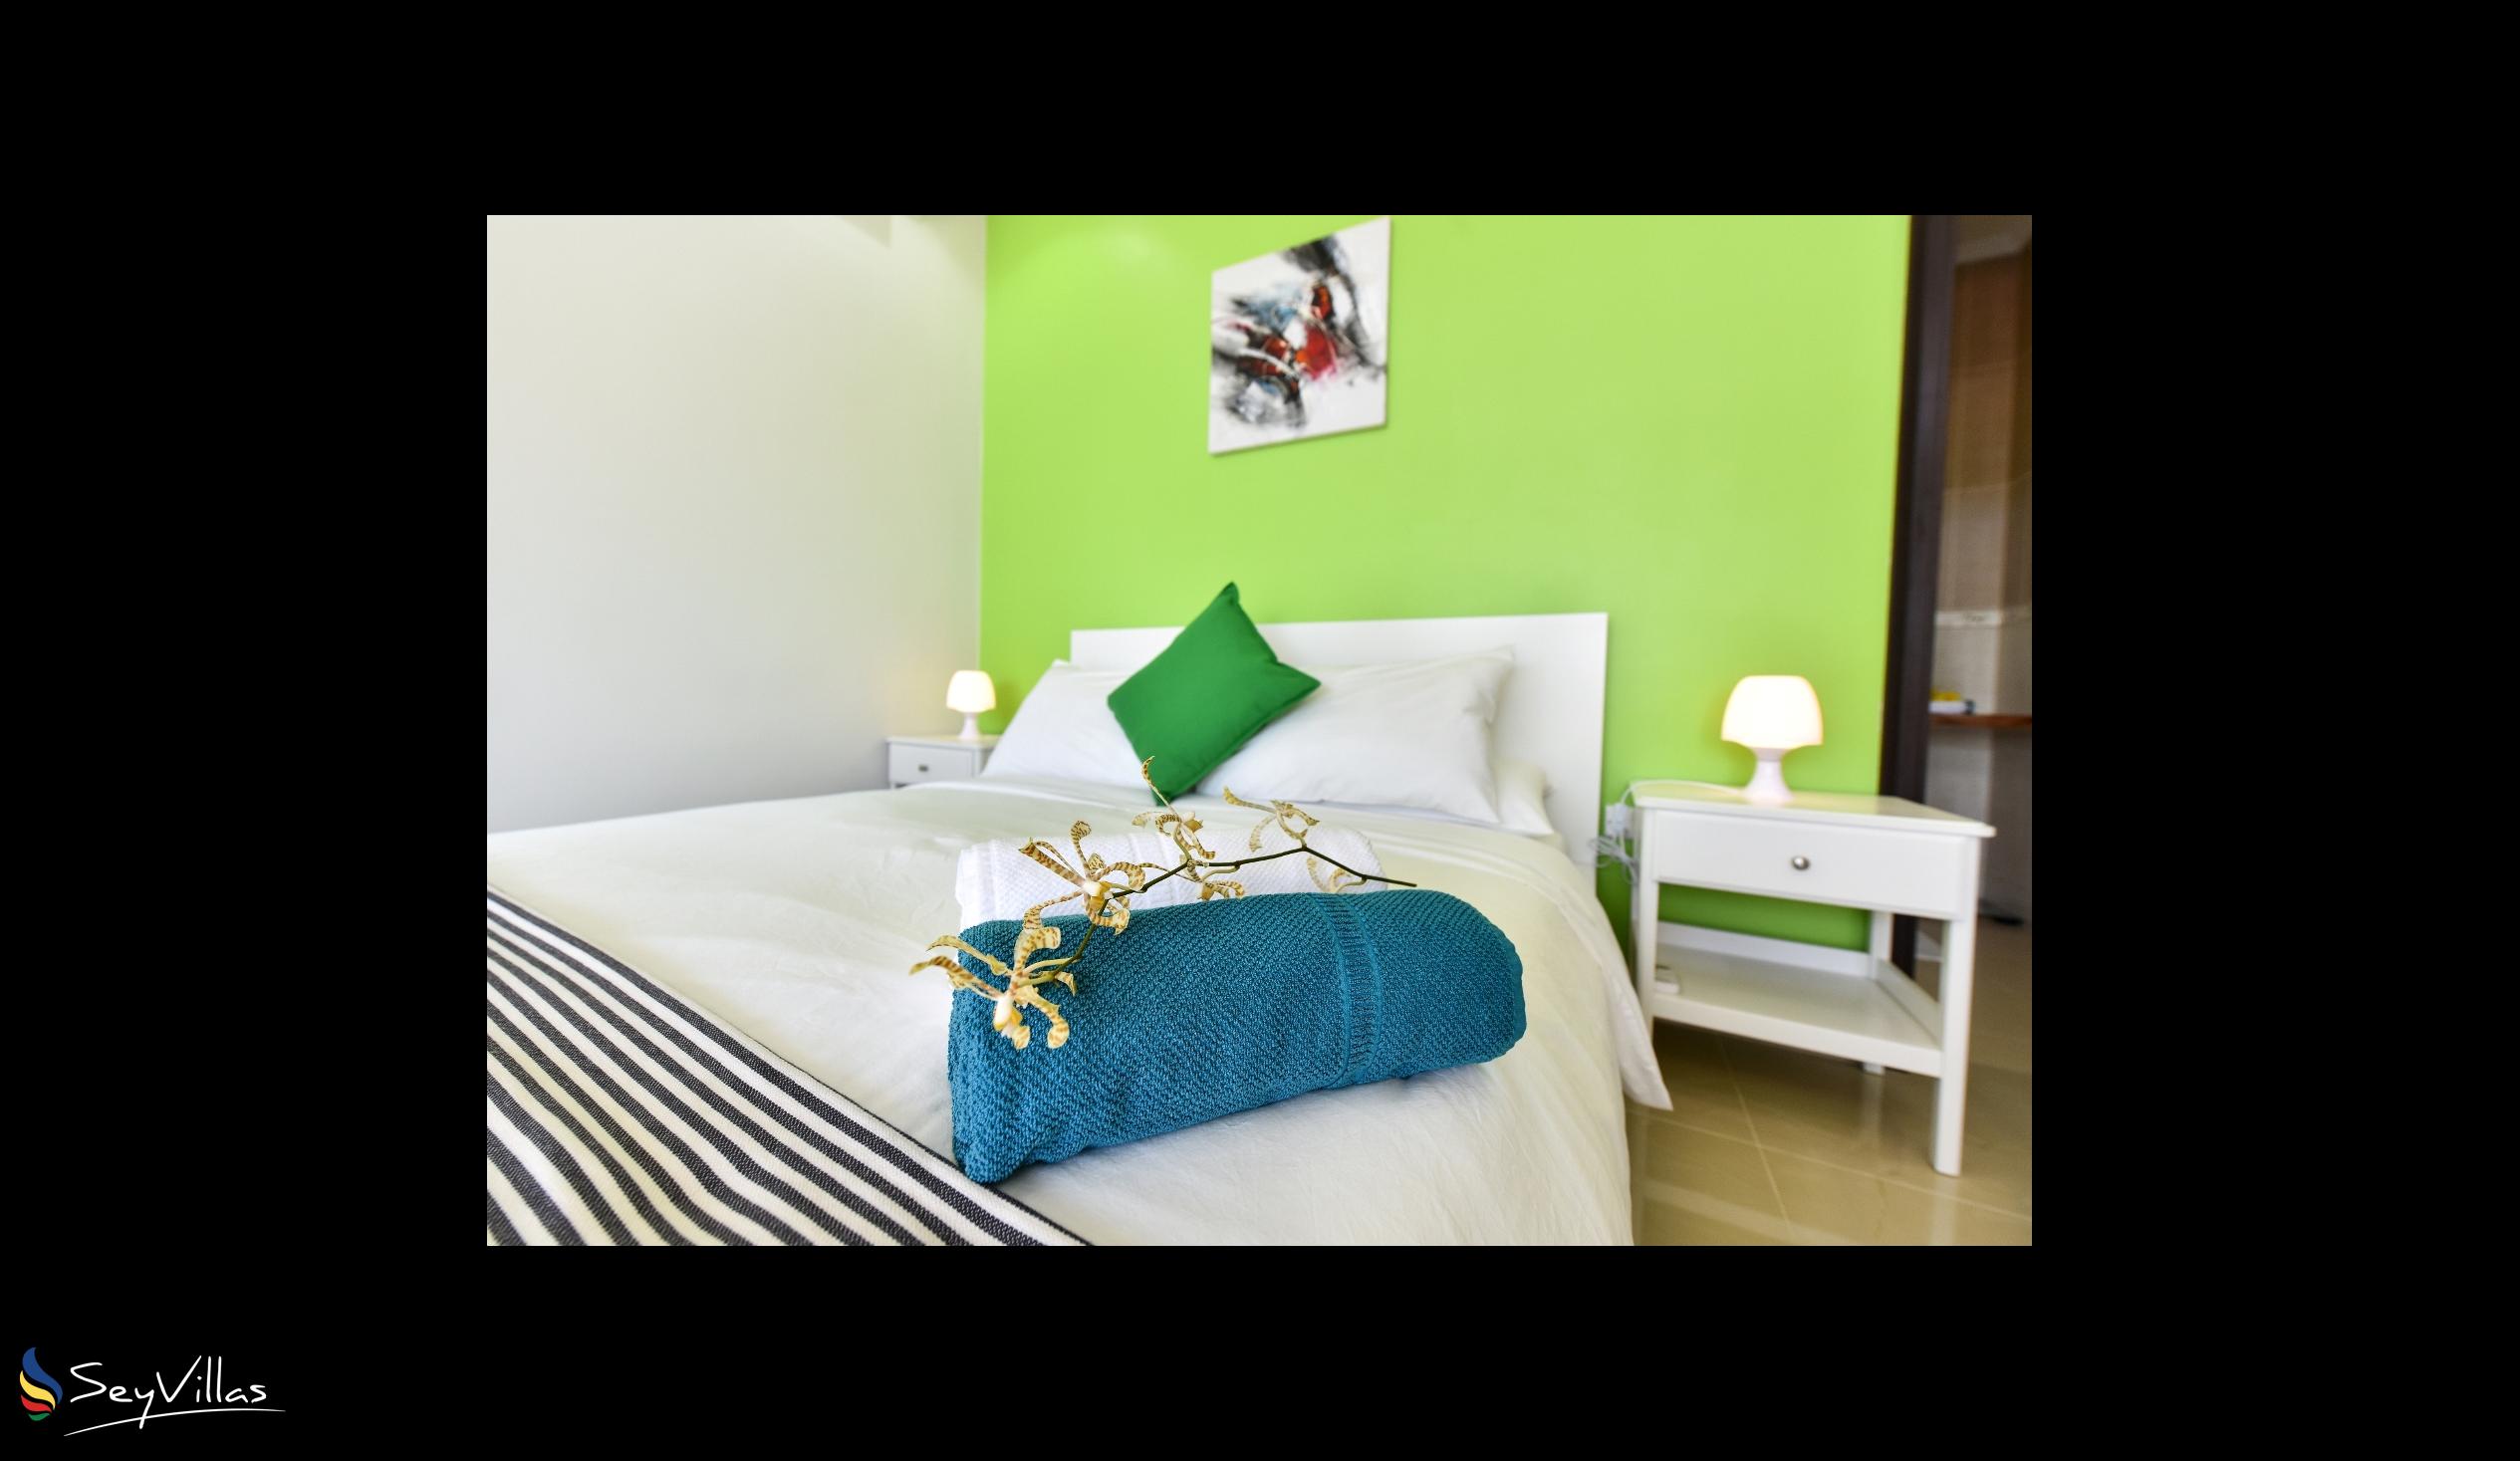 Foto 14: Moulin Kann Villas - Appartamento con 1 camera da letto - Mahé (Seychelles)